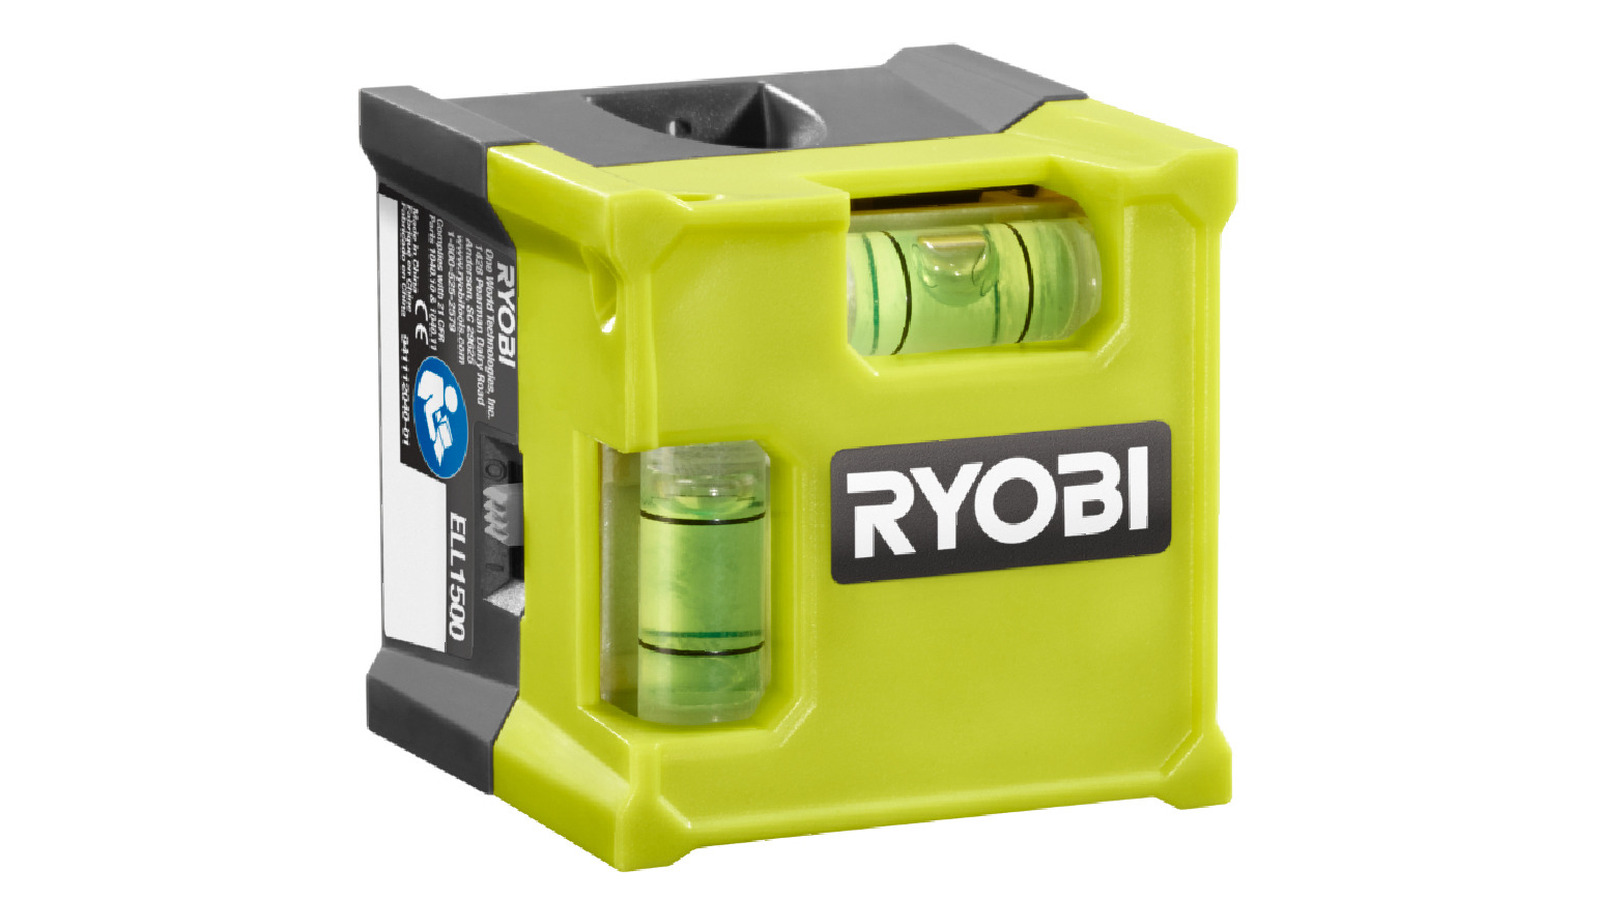 Todo lo que necesita saber sobre el cubo láser de Ryobi antes de comprarlo (si puede encontrar uno)